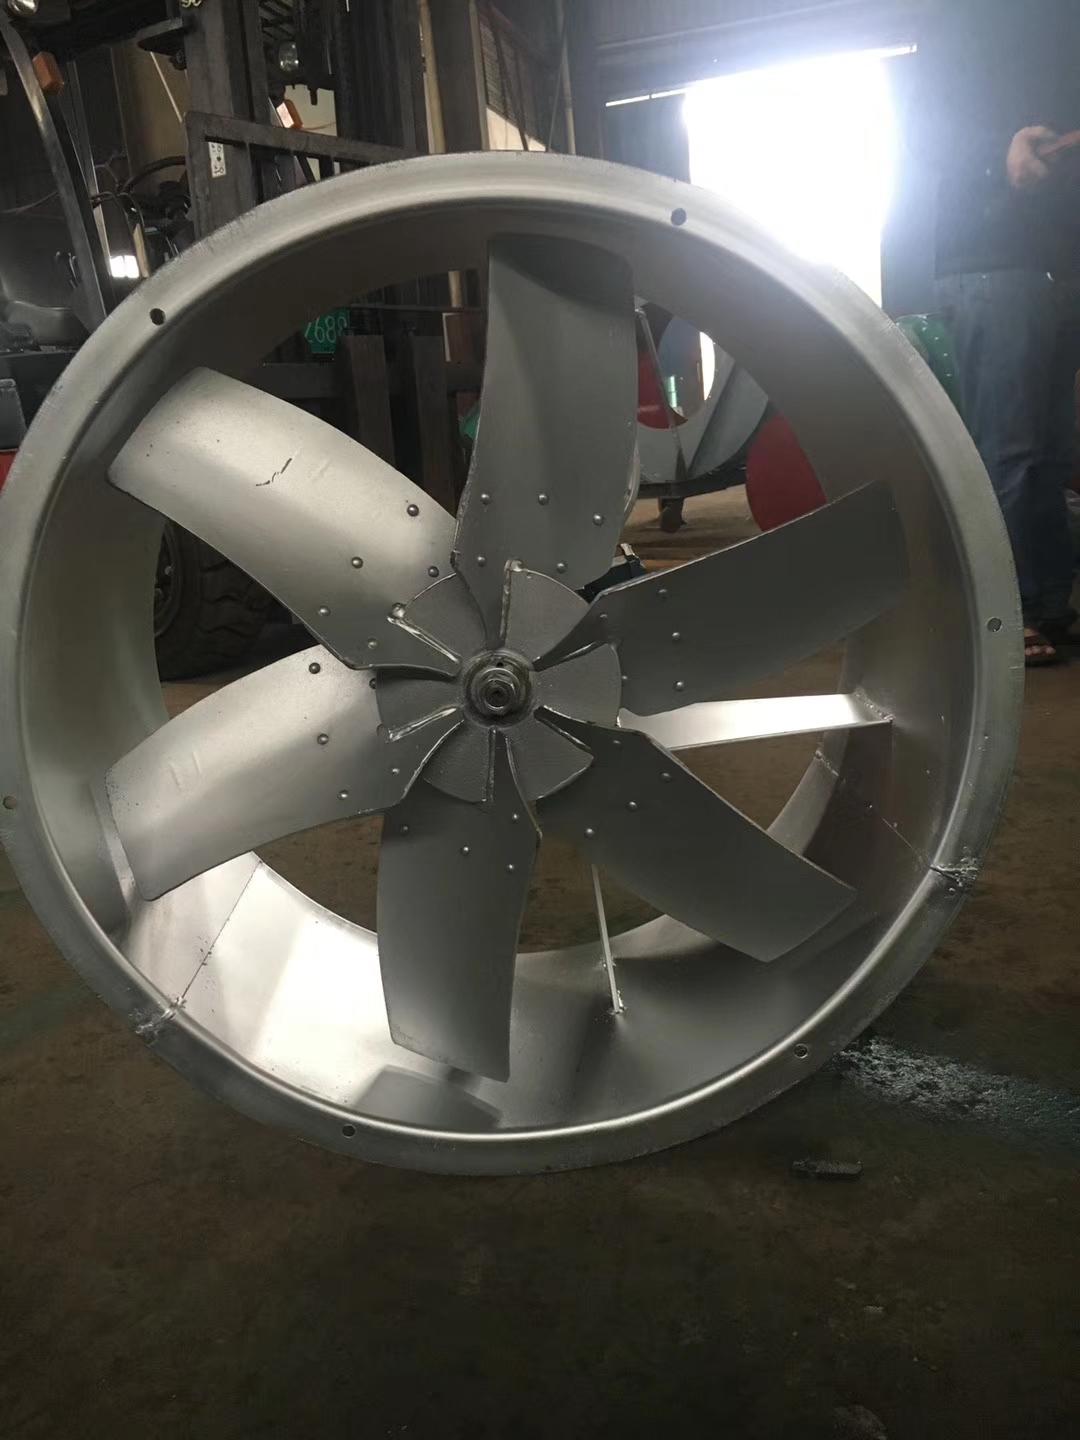 OEM/ODM China Commercial Roof Fans - axial fan blower wall style exhaust fan industry fan T35 – Lion King